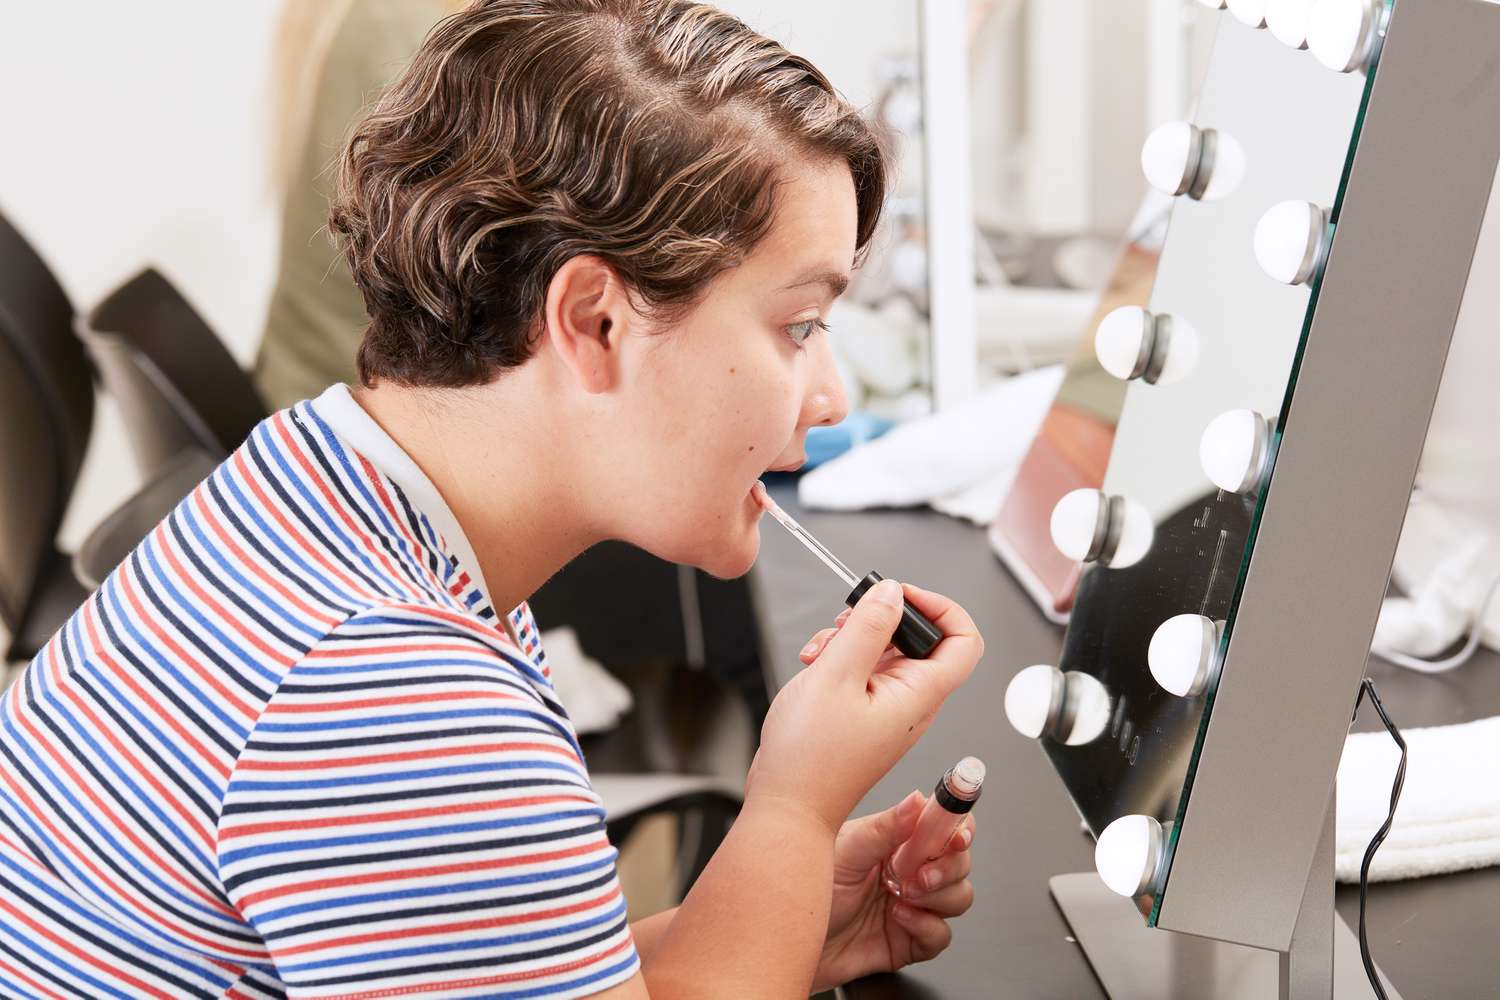 Homem aplicando brilho labial e. l. f. Cosméticos Lip Plumping Gloss nos lábios no espelho